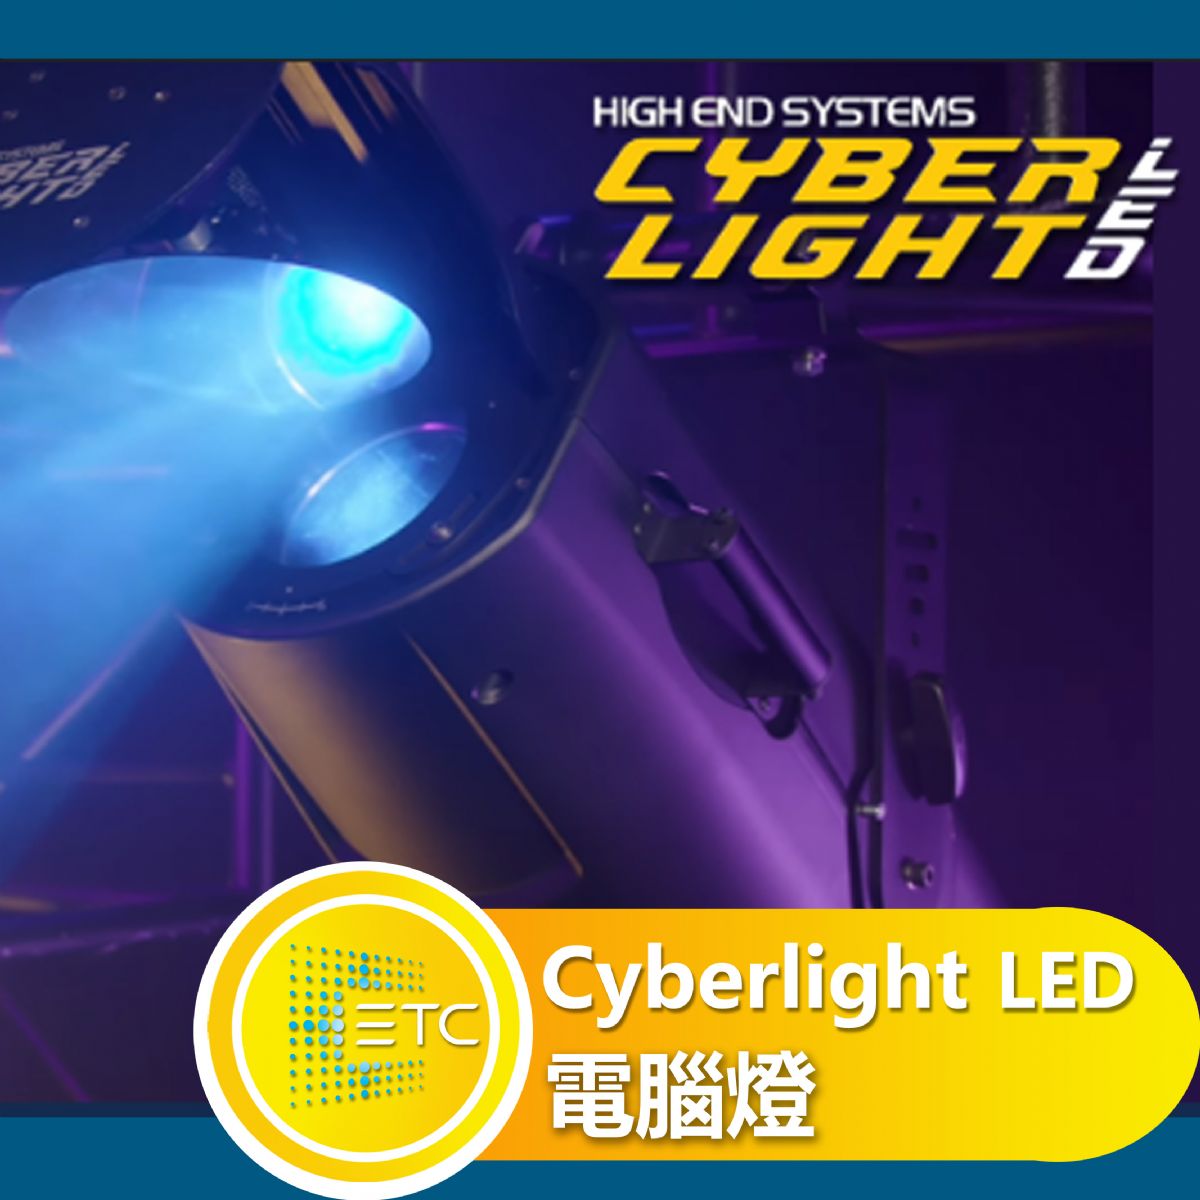 Cyberlight LED 電腦燈